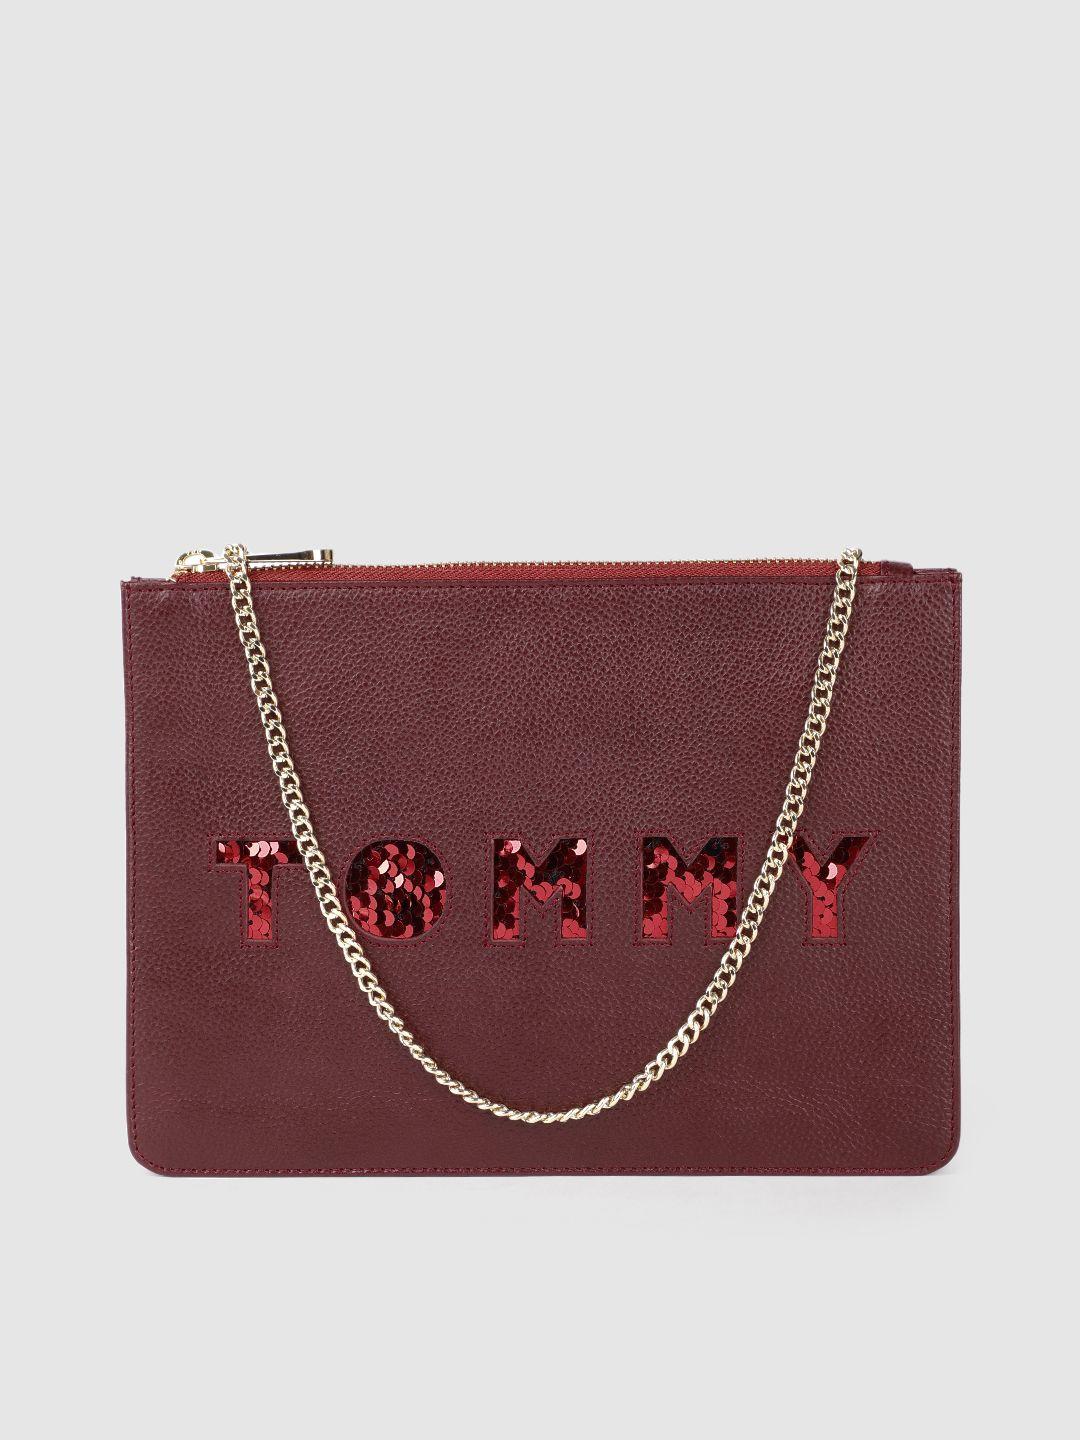 tommy hilfiger burgundy brand logo embellished leather regular structured sling bag